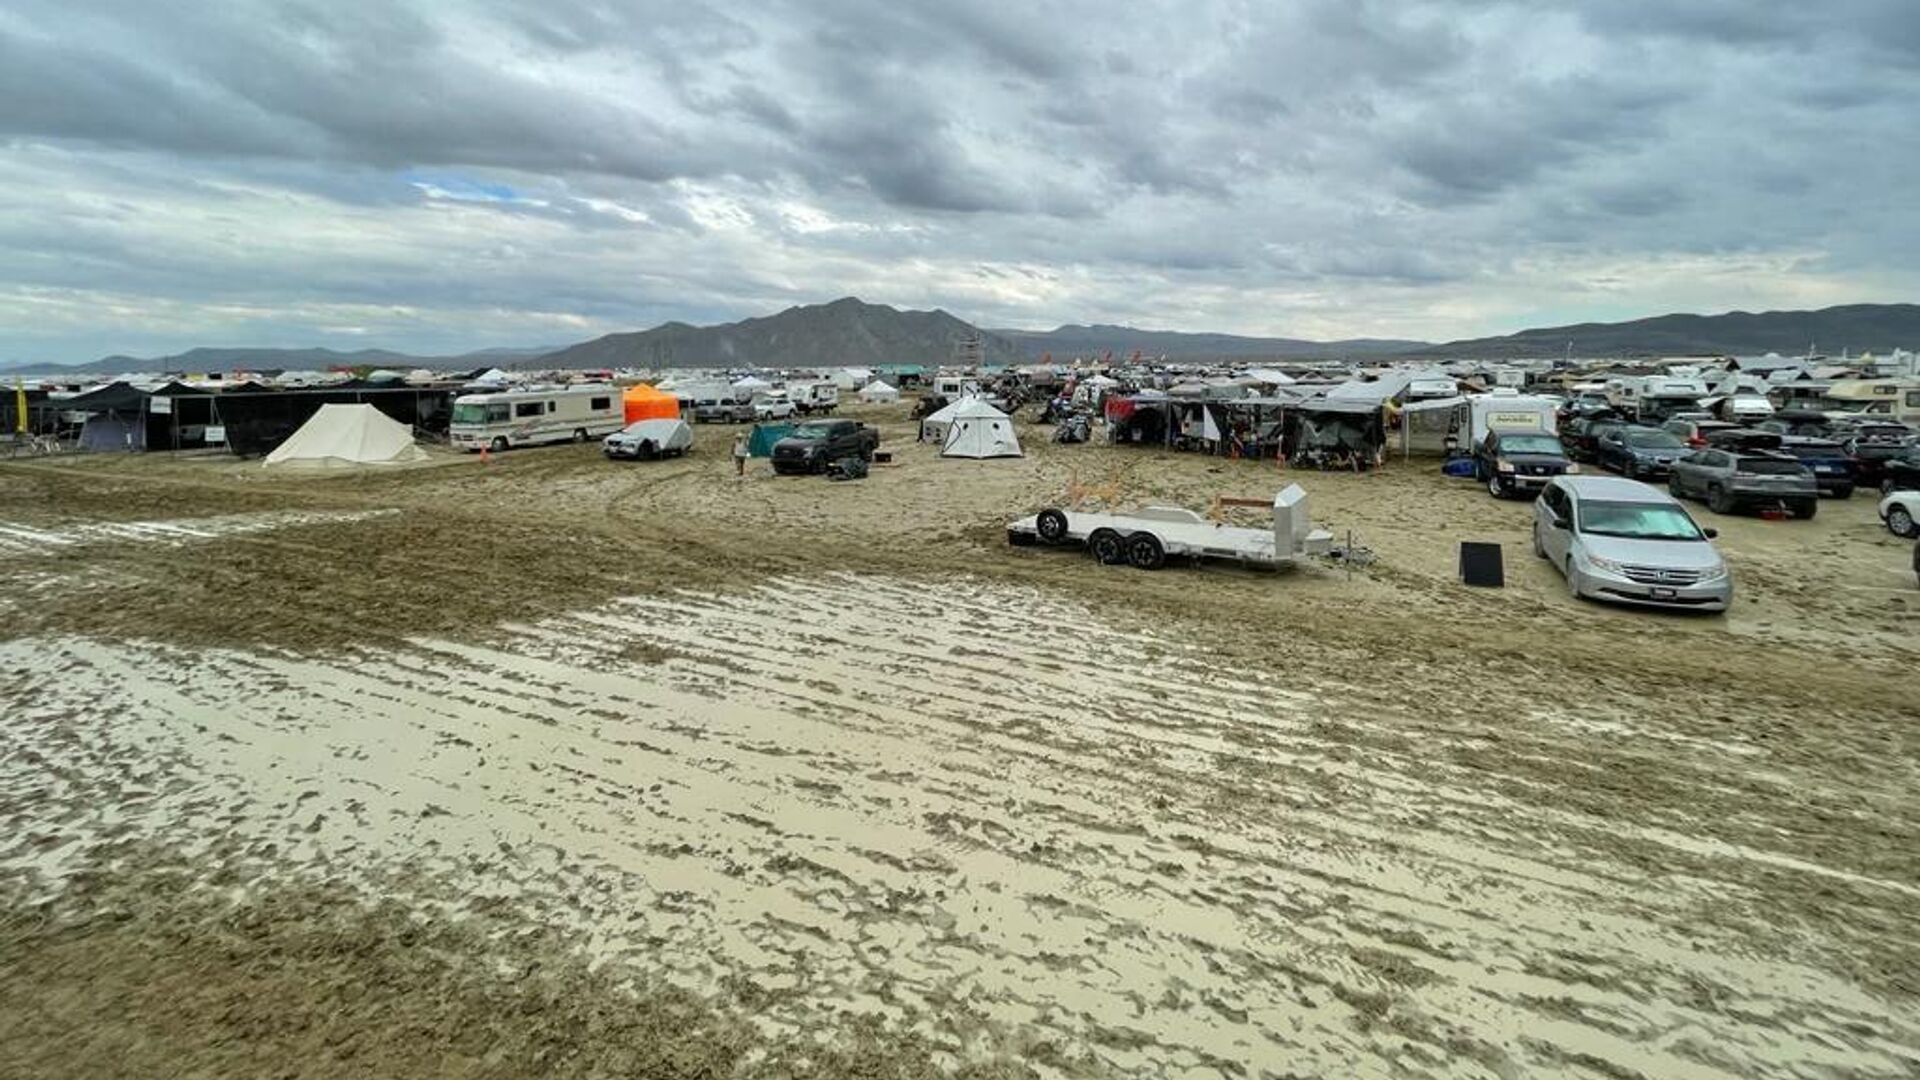 Место проведения фестиваля Burning Man в пустыне Блэк-Рок в Неваде после проливных дождей. 3 сентября 2023 - РИА Новости, 1920, 03.09.2023